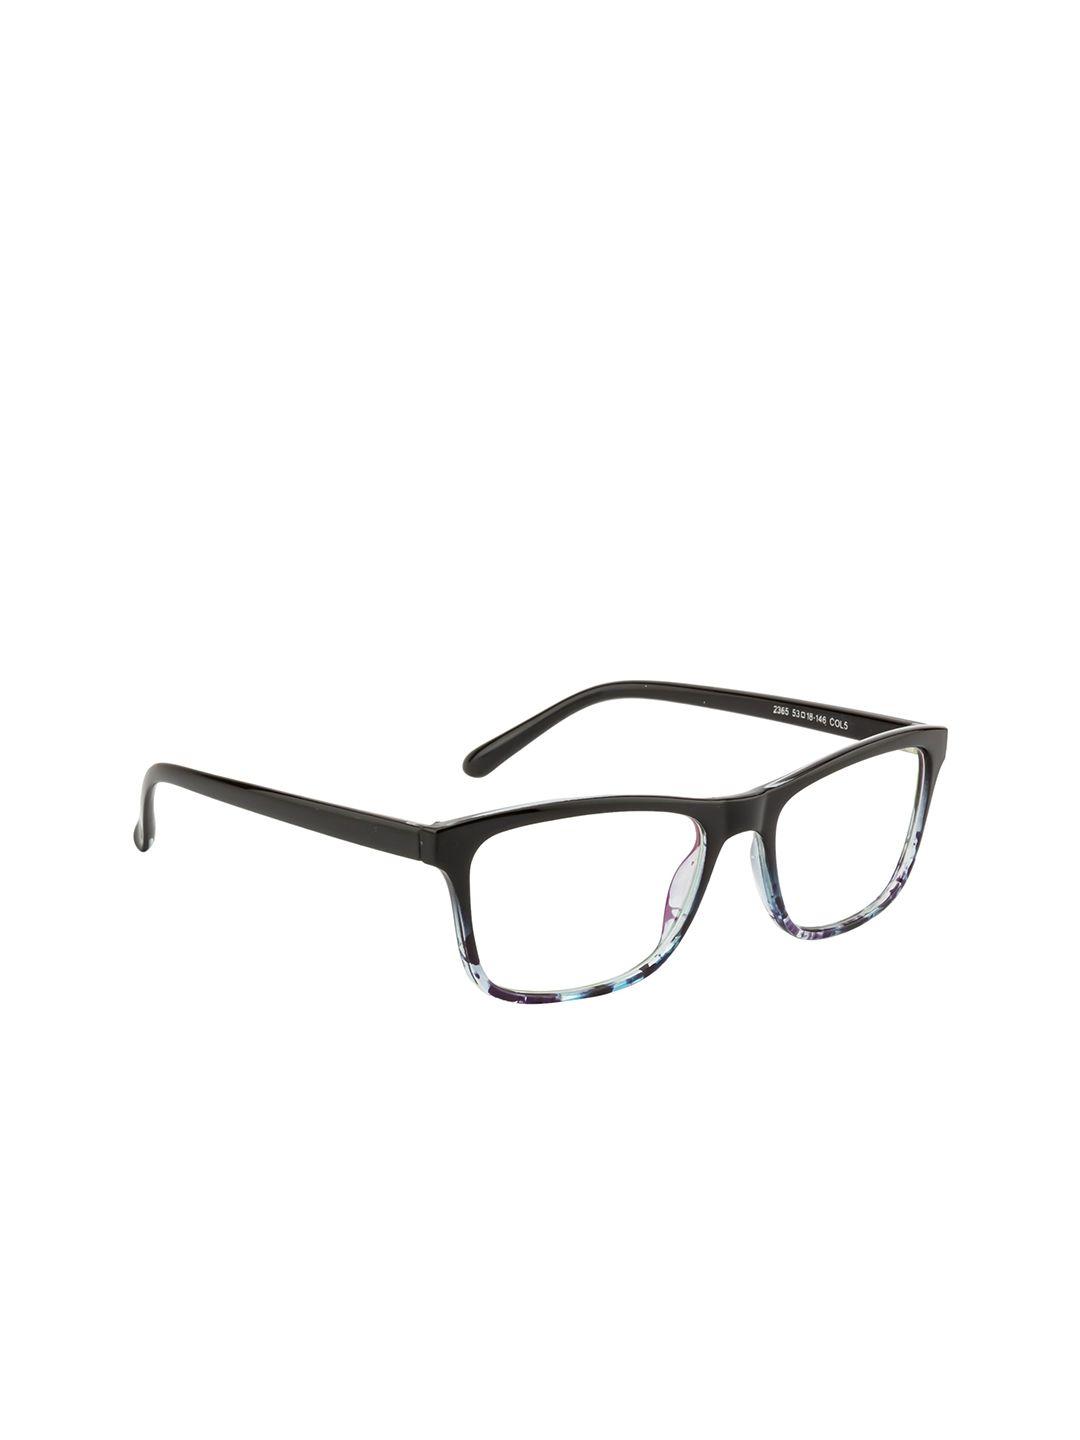 gold berg unisex black & blue full rim rectangle frames eyeglasses